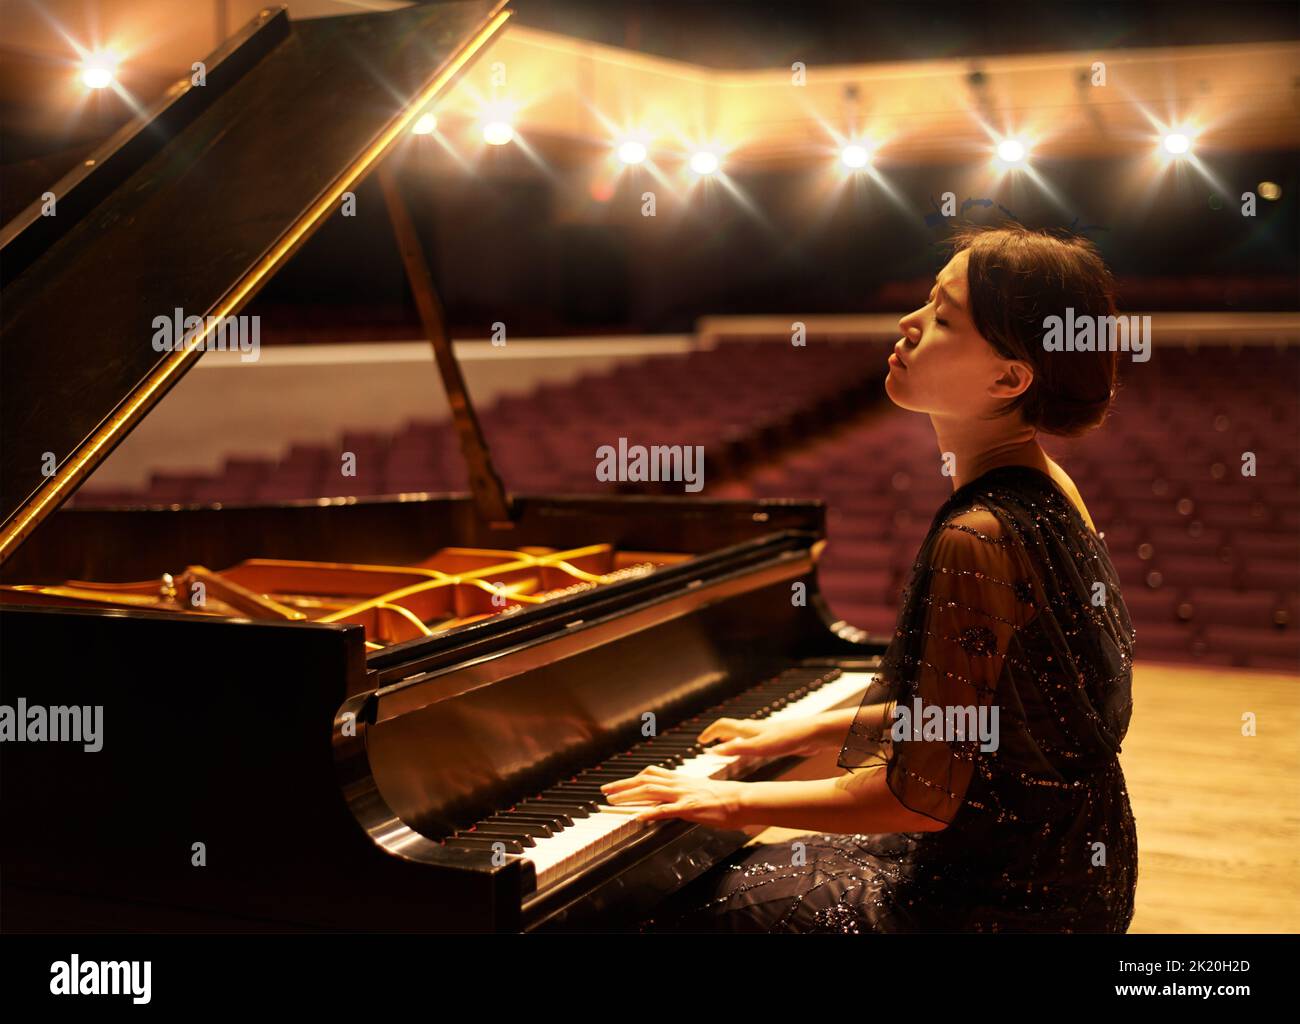 Musik ist eine Kunstform. Eine junge Frau, die während eines musikalischen Konzerts Klavier spielt. Stockfoto